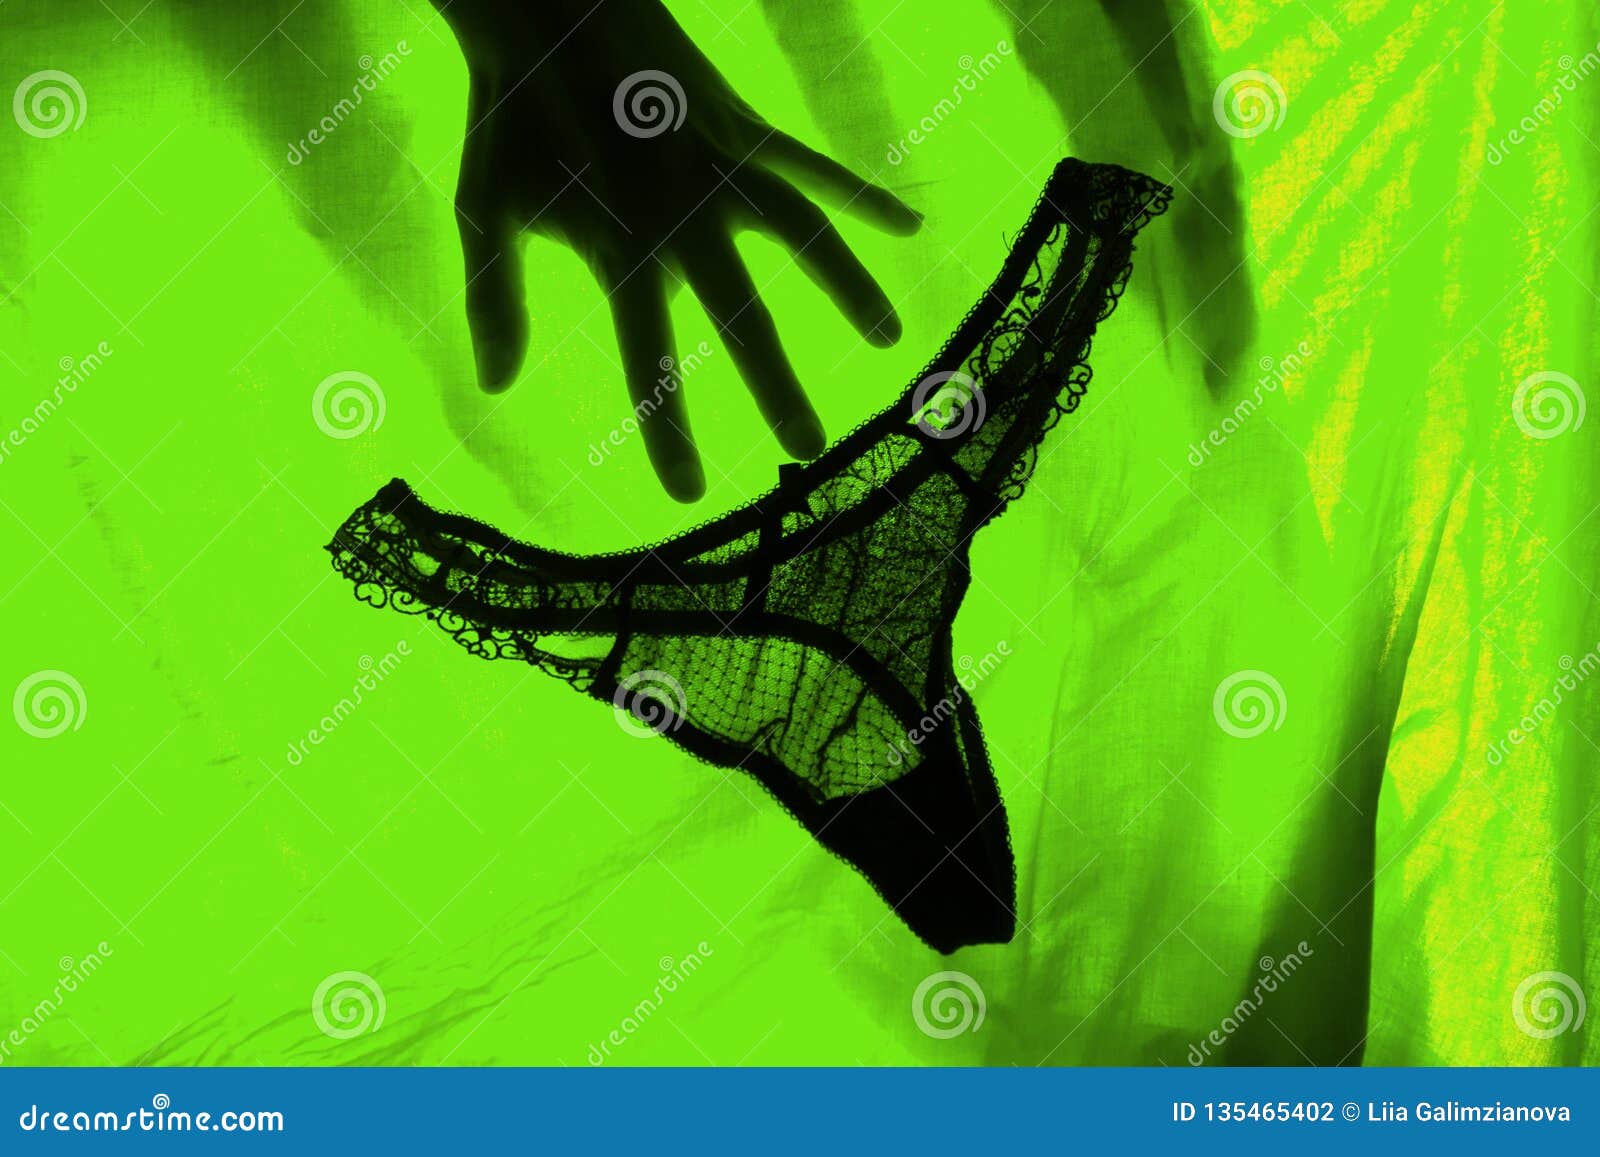 Hands Inside Panties Selfies